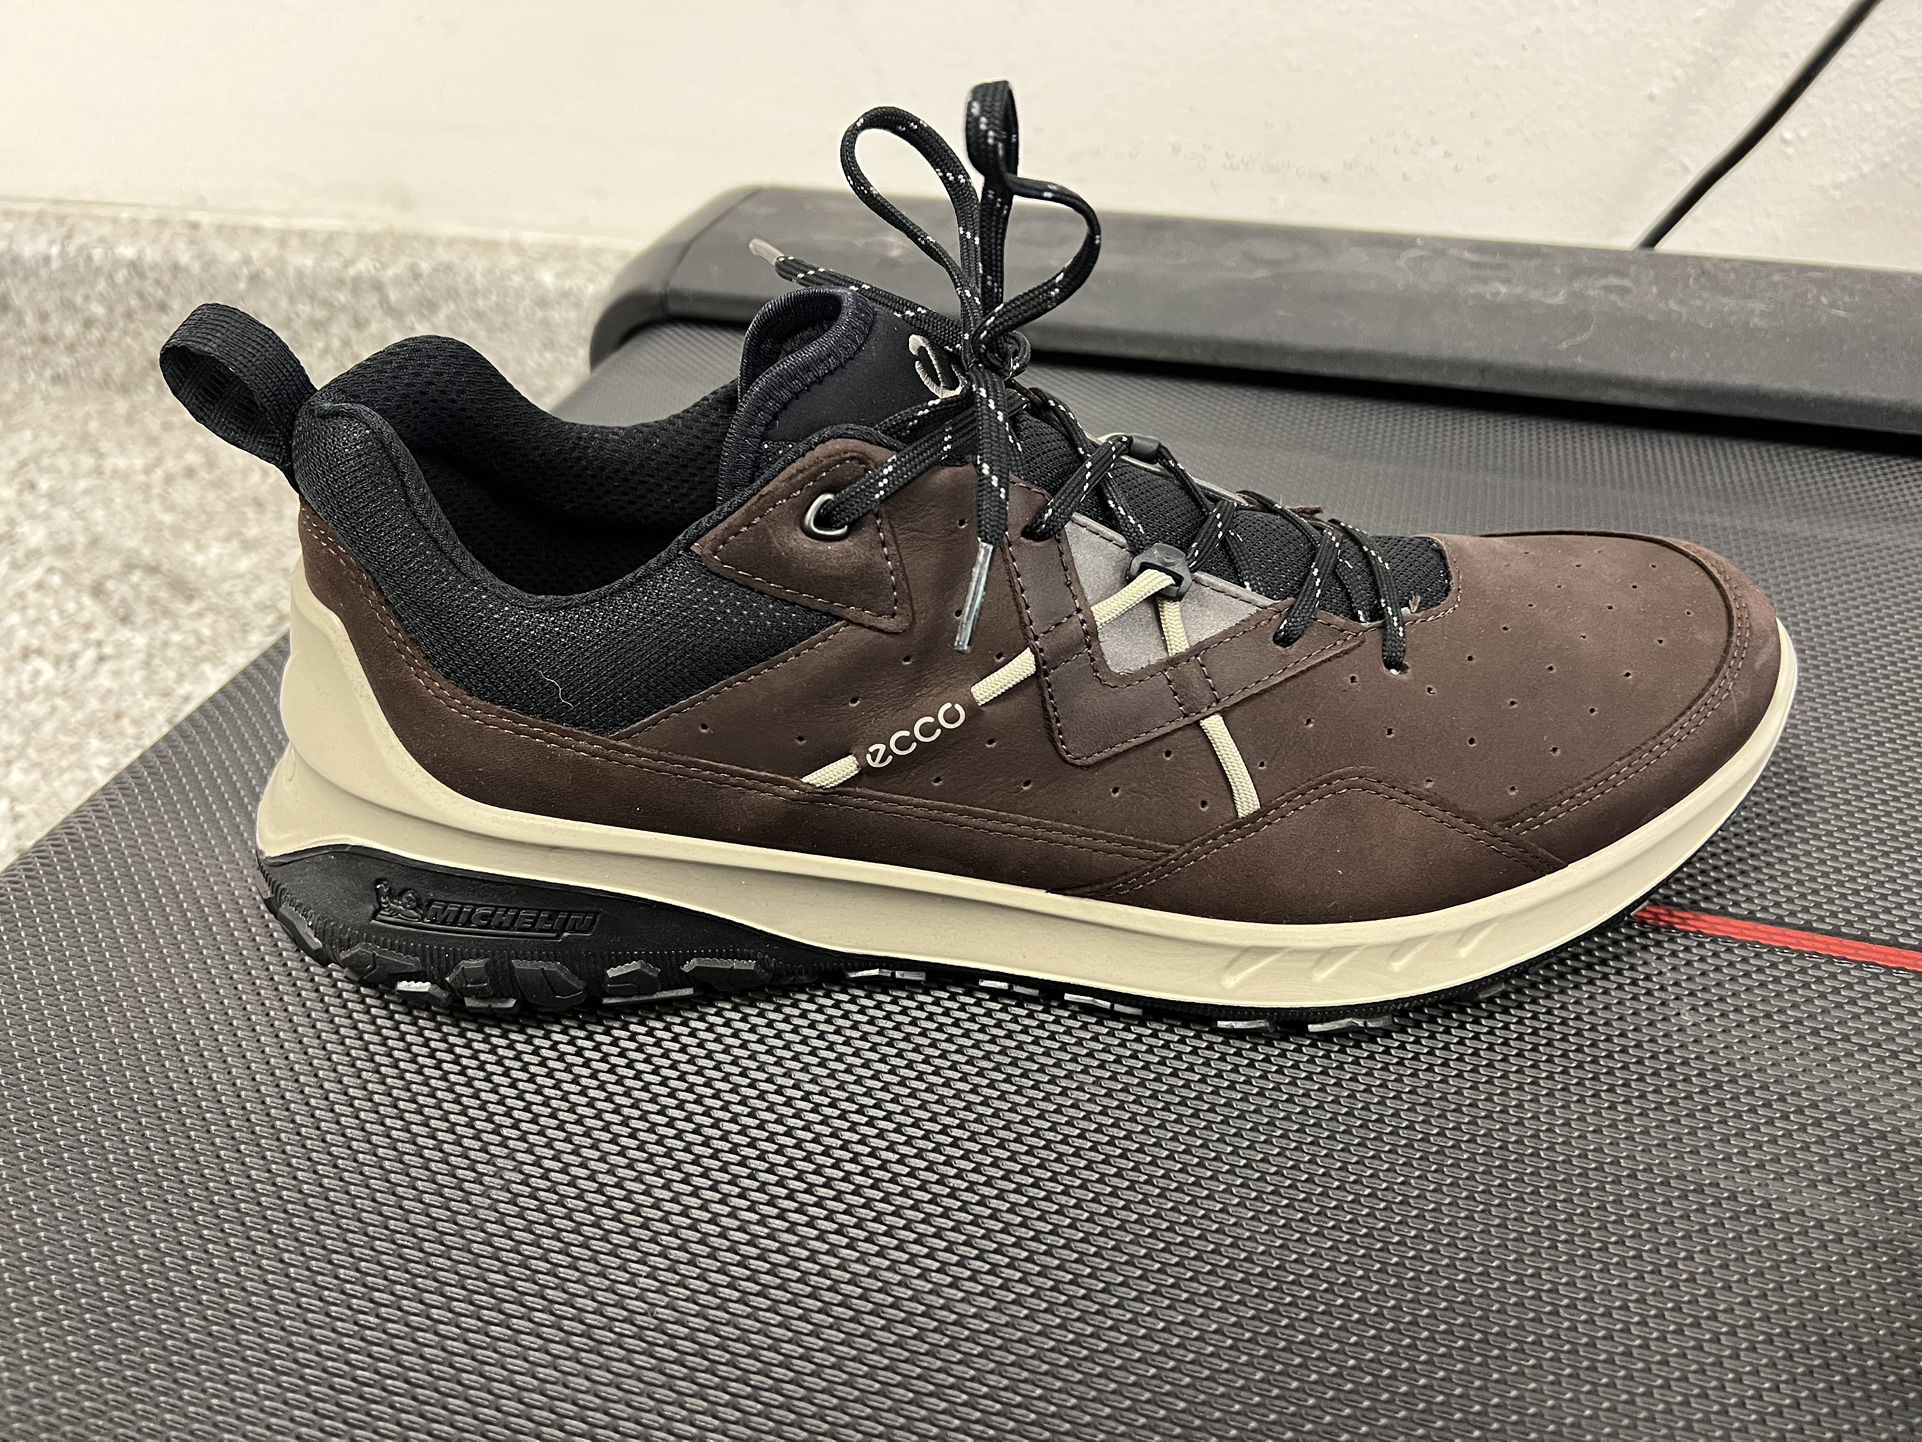 ECCO Men's Ultra Terrain Low Hiking Shoe (US 12-12.5) for Sale in